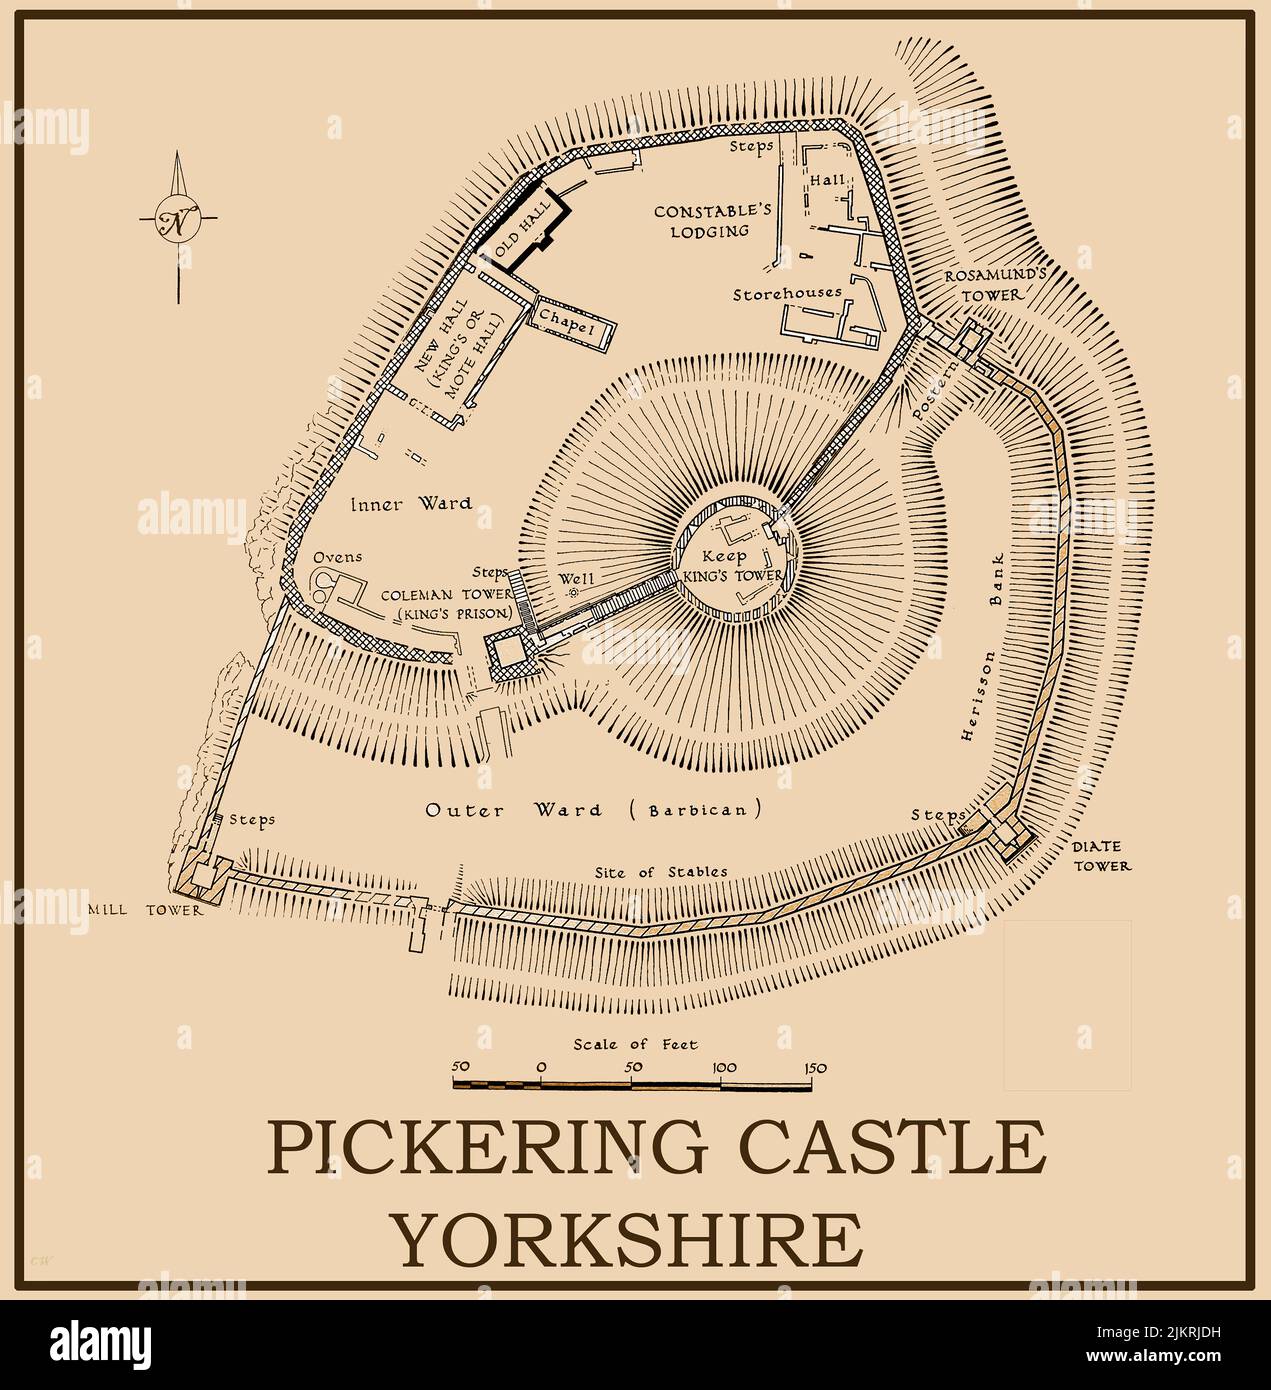 Un mapa o plan vintage de Pickering Castle, Yorkshire, Reino Unido. La fortificación de motte-y-bailey fue precedida por una madera del siglo 12th y la tierra motte construido por los normandos bajo Guillermo el Conquistador . Las fortificaciones de piedra datan del siglo 13th. Fue construido para mantener el control de la zona después de la captura del Norte. Foto de stock